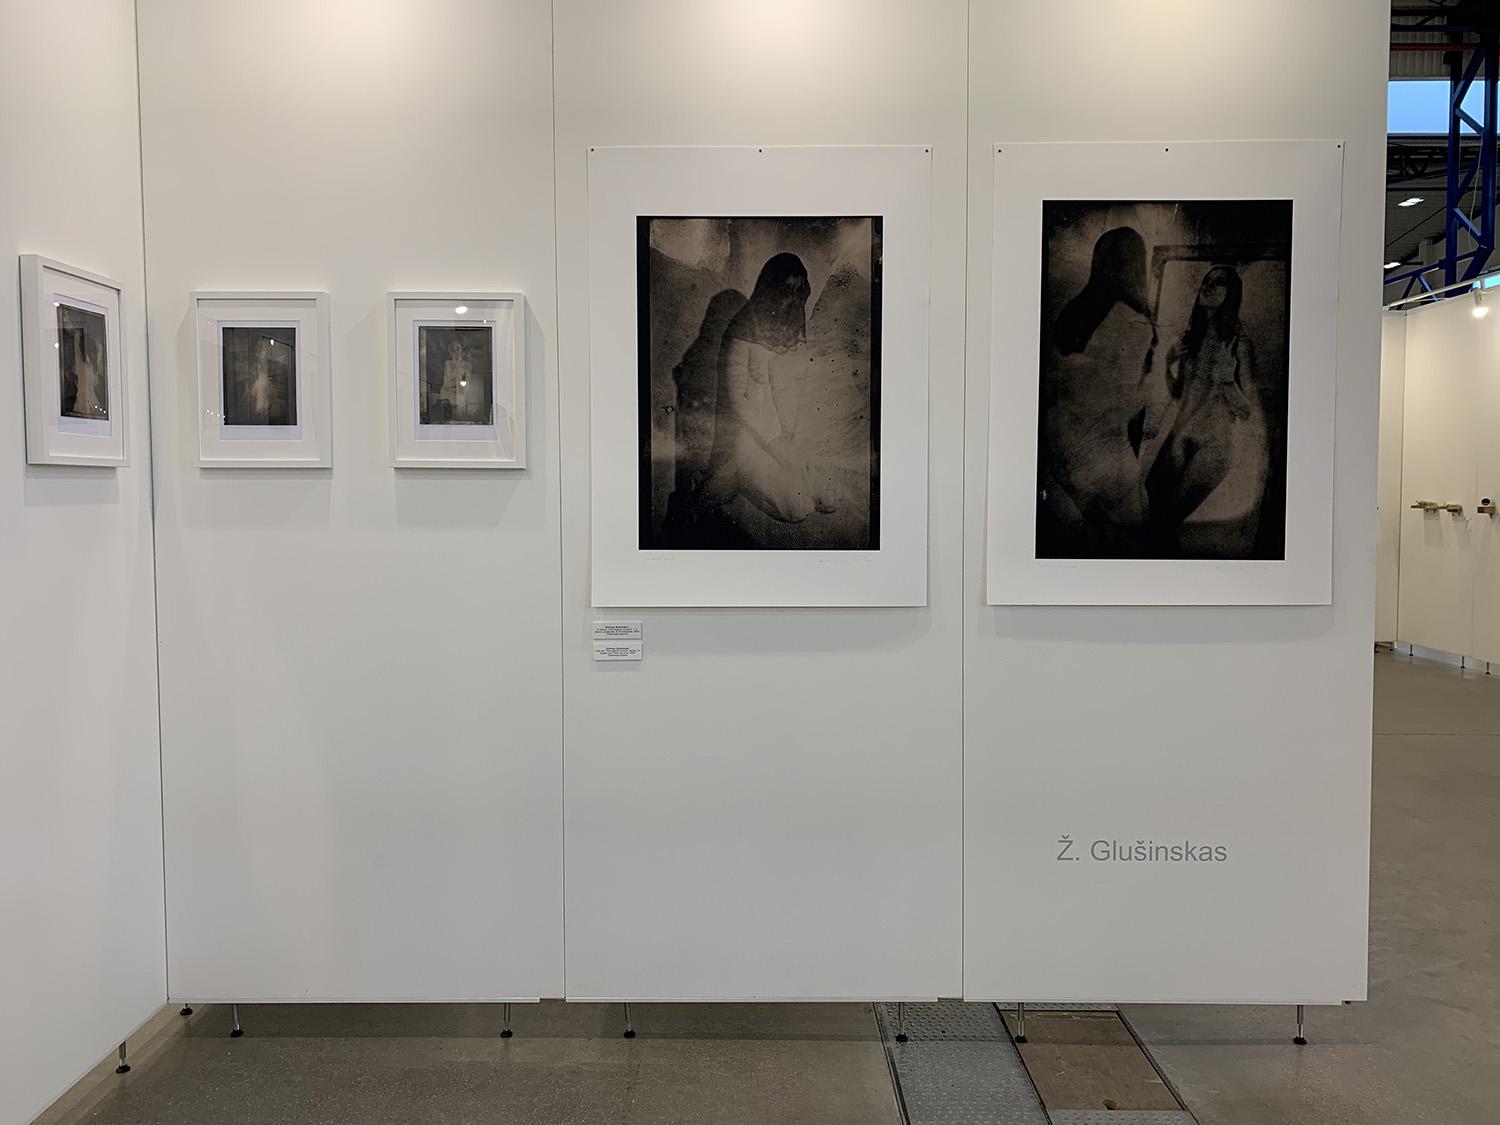 Tarptautinėje parodoje – „Vilkamirgės“ galerija / Fotomenininko Ž. Glušinsko darbai.